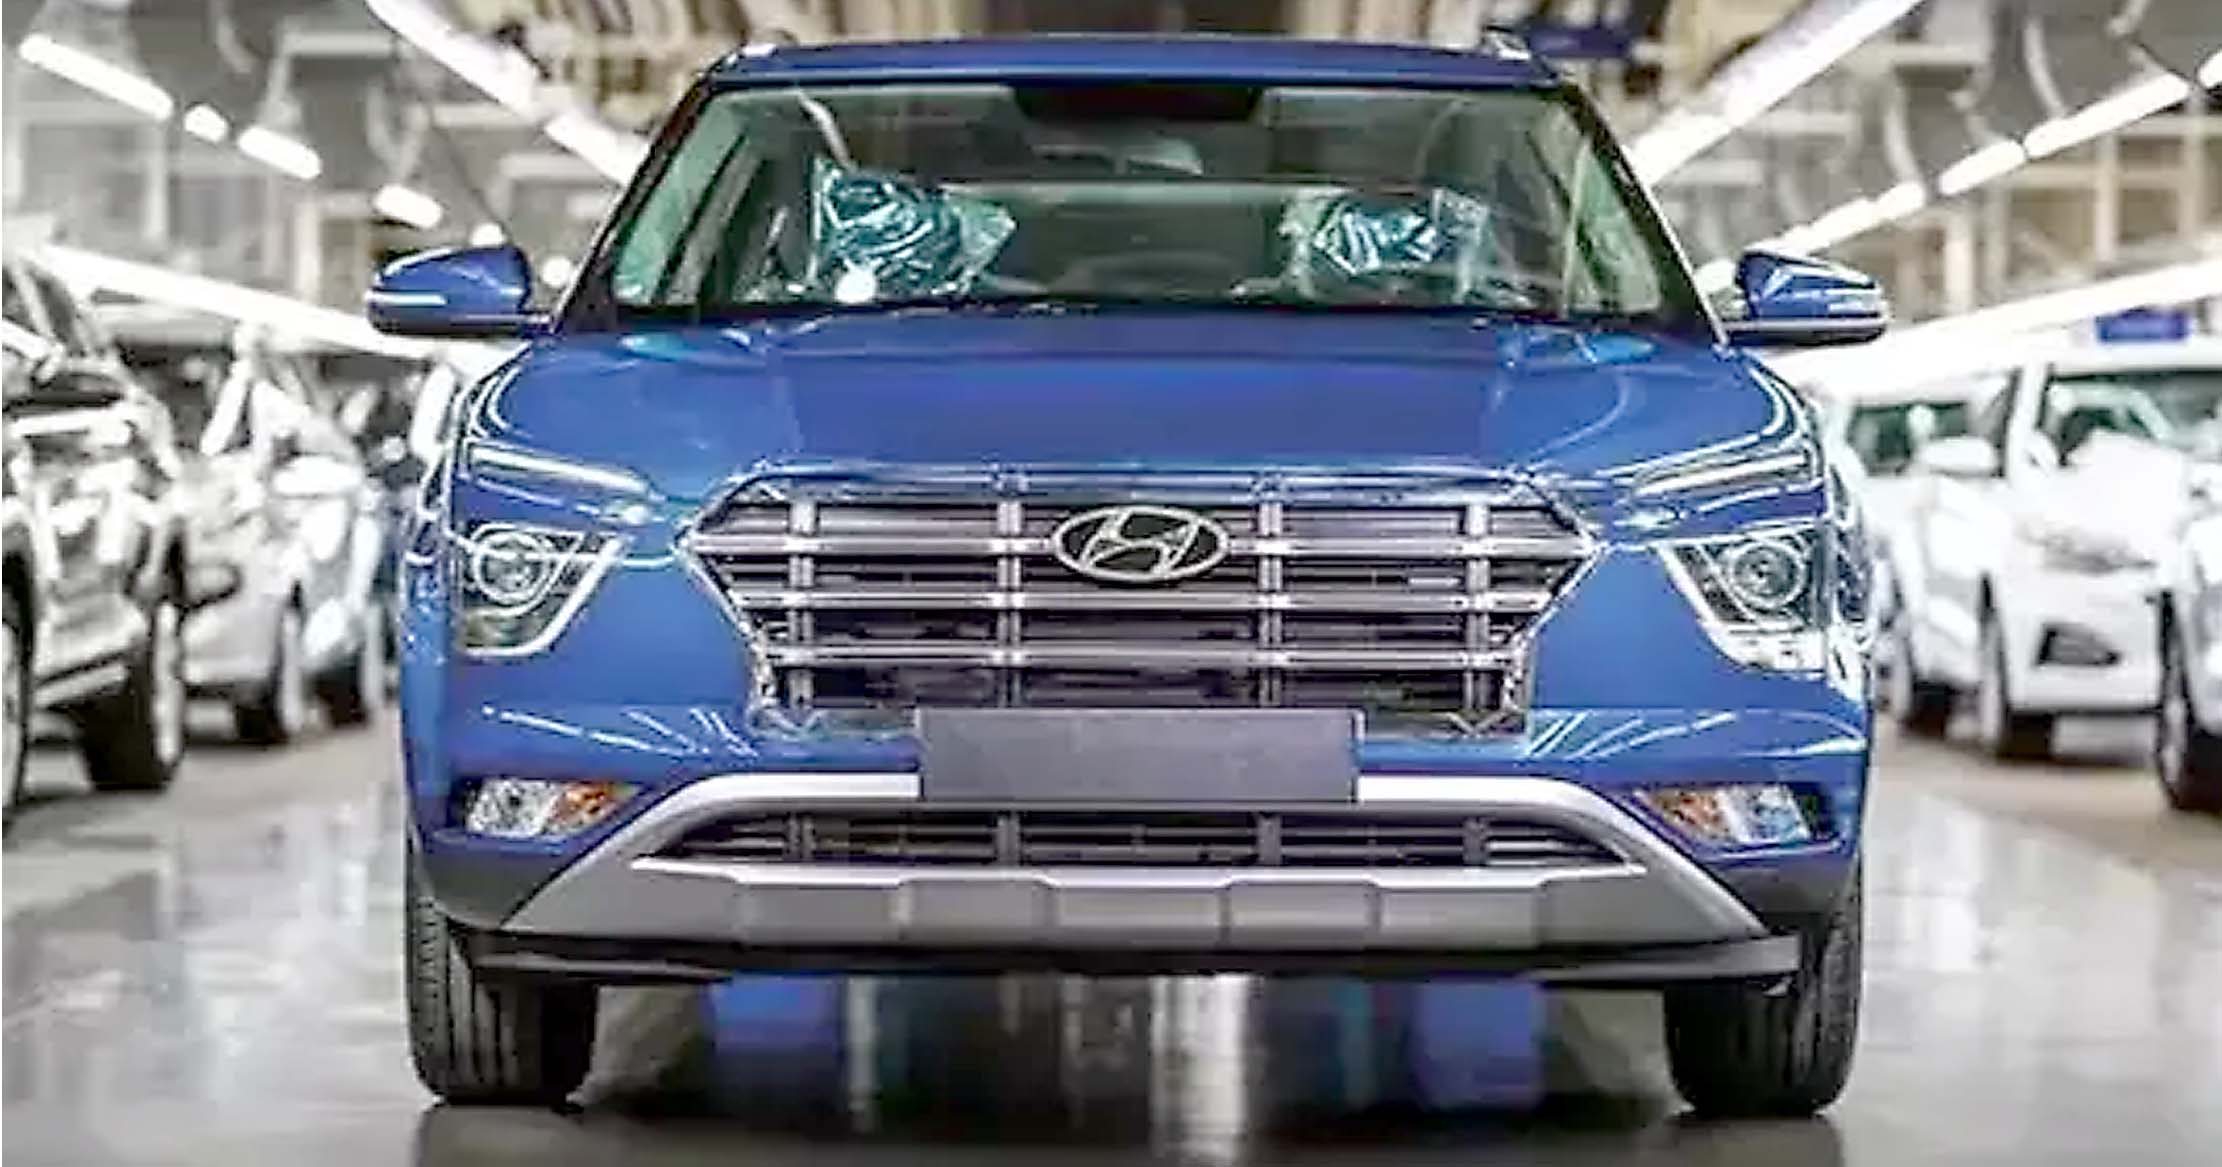 Safari, Hector जैसी कारों को टक्कर देने आ रही Hyundai Alcazar